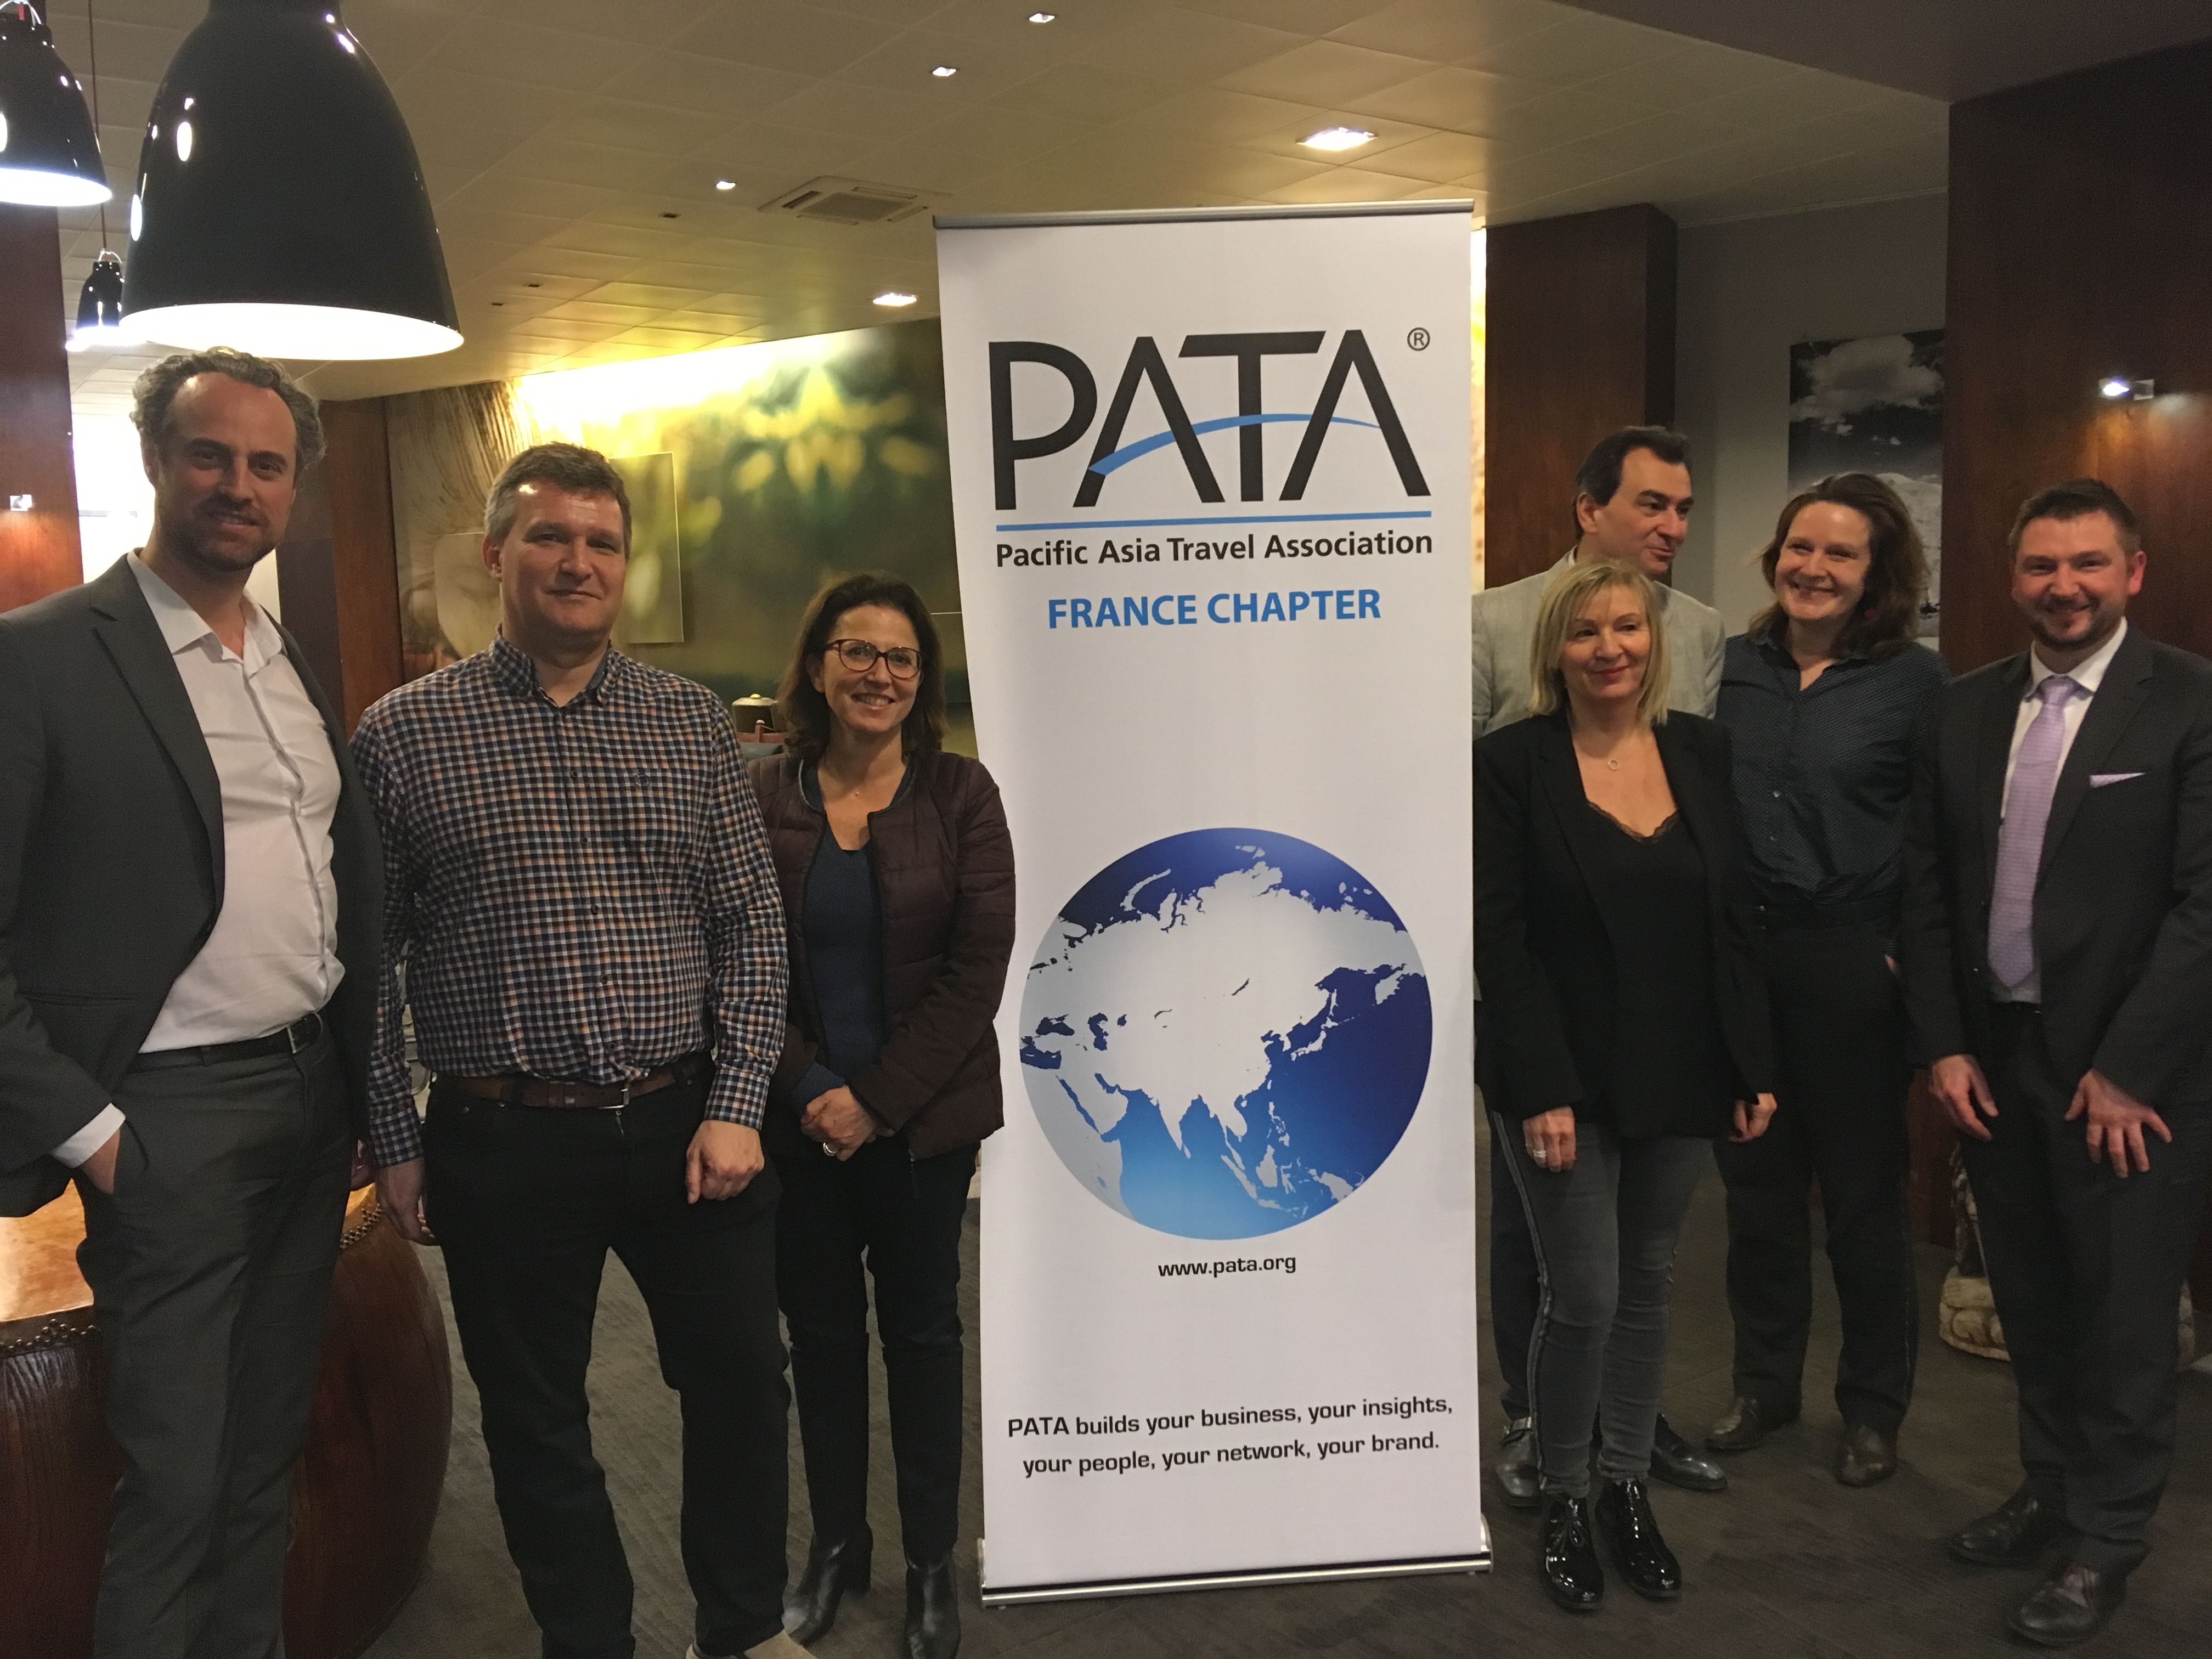 A gauche, Guillaume Linton, président de PATA France avec le bureau de l'association, Chris Crampton, président de PATA UK et Sébastien Cron de Forwardkeys. - CL